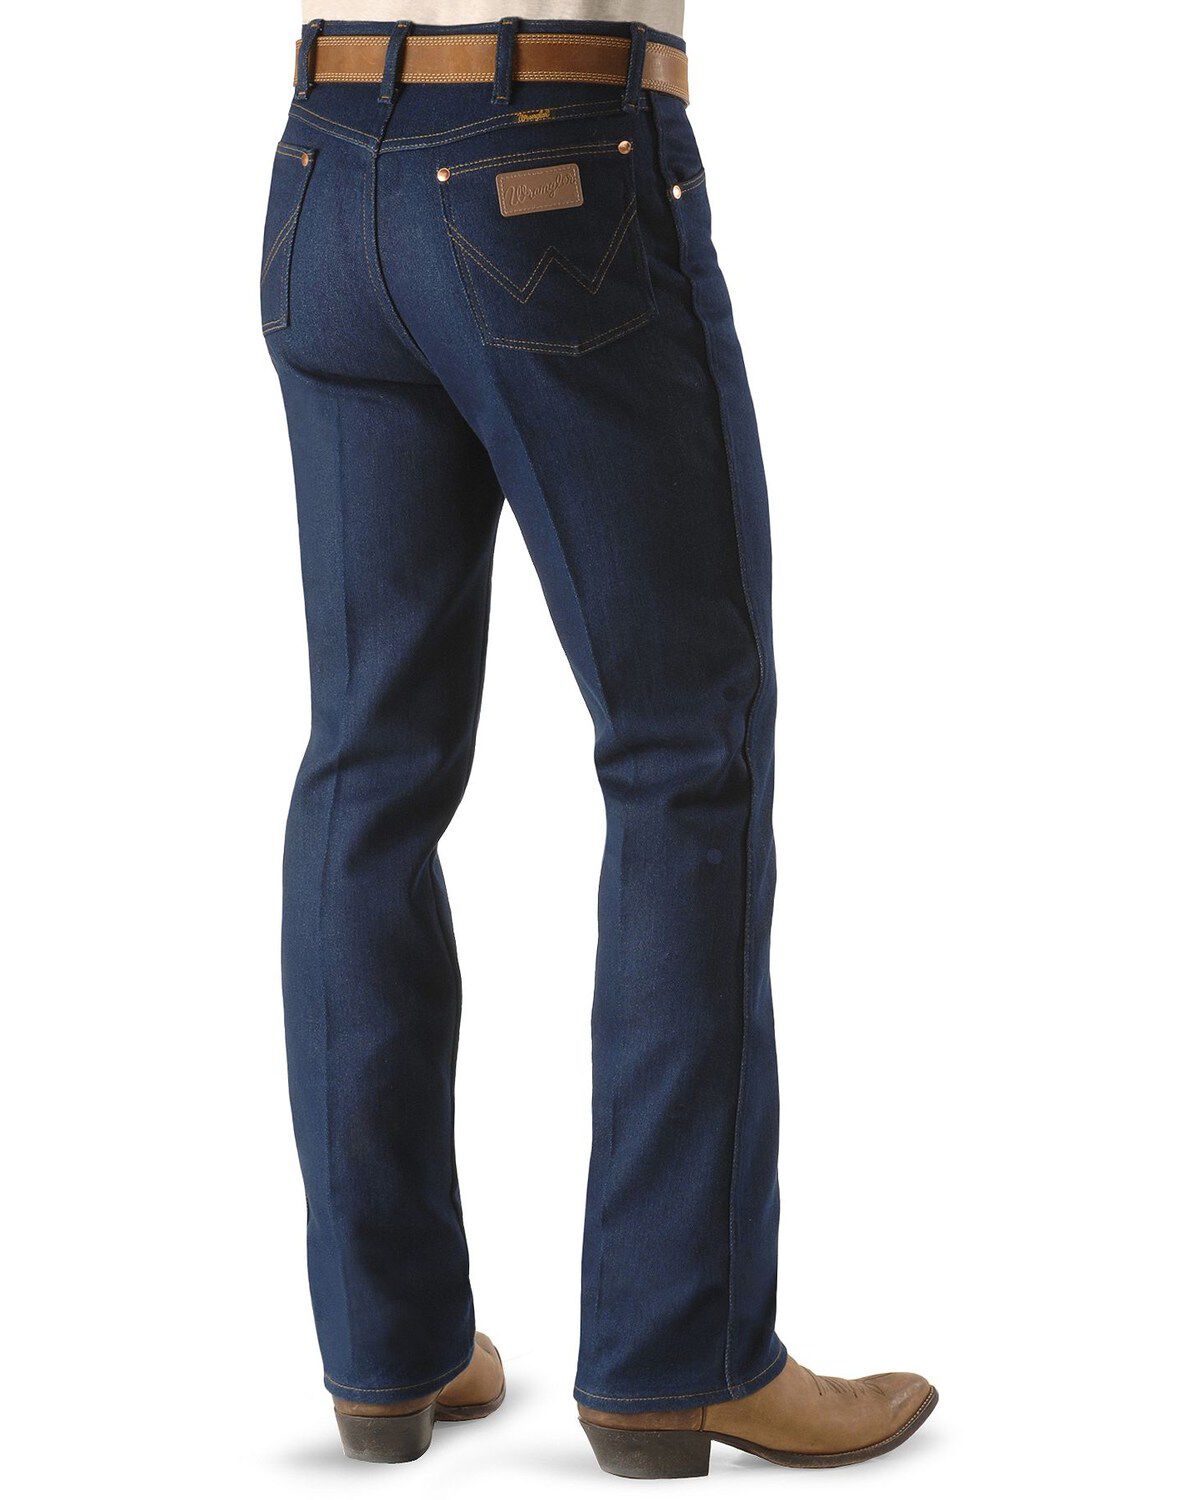 Wrangler Jeans - 947 Regular Fit 